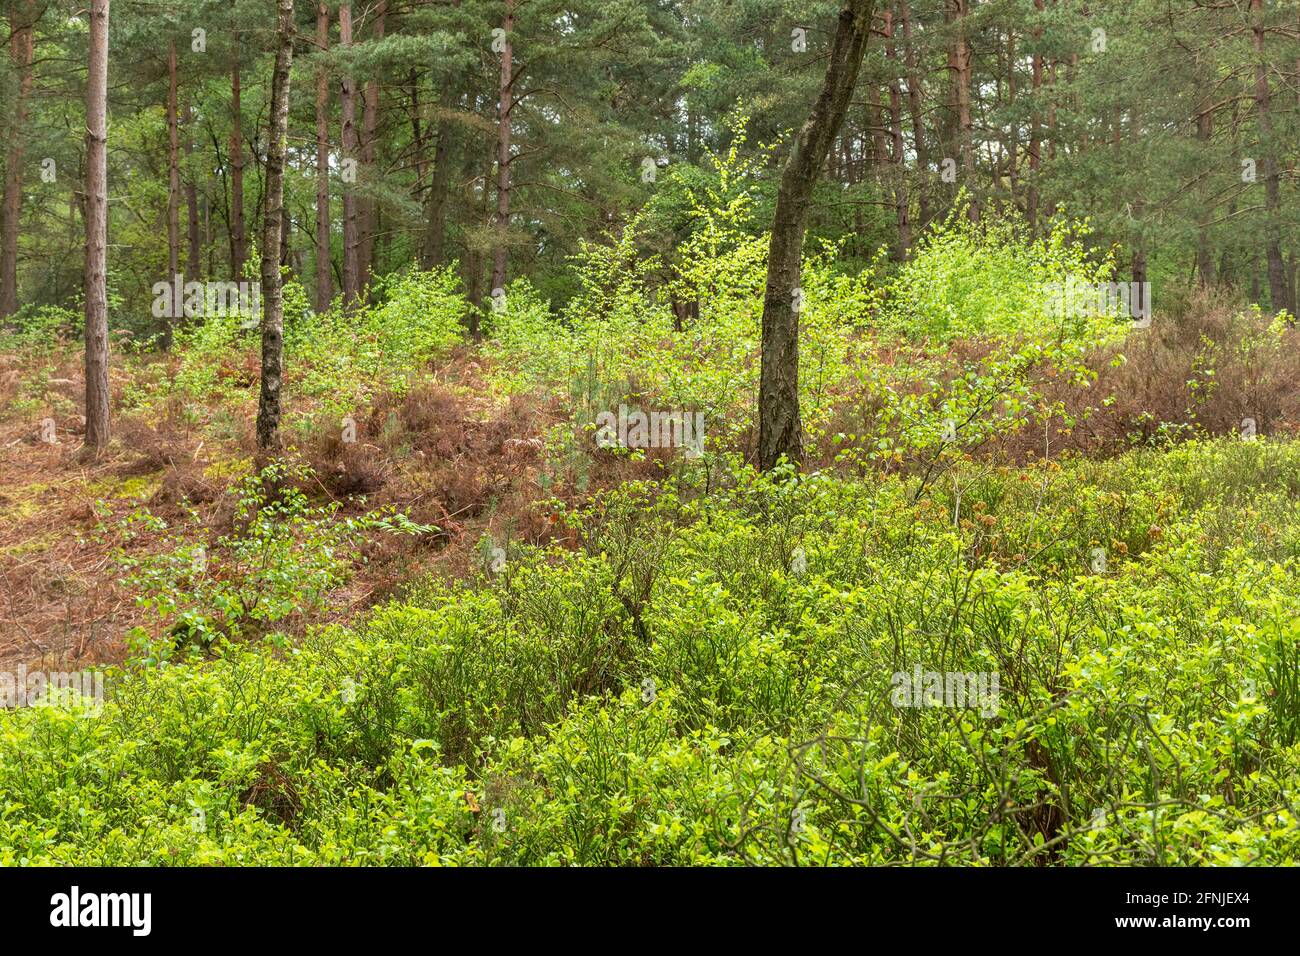 Unterstöckige Vegetation in einer waldplantage mit schottenkiefern (Pinus sylvestris) in Surrey, Großbritannien, einschließlich Heidelbeere (Vaccinium myrtillus) und Silberbirke Stockfoto